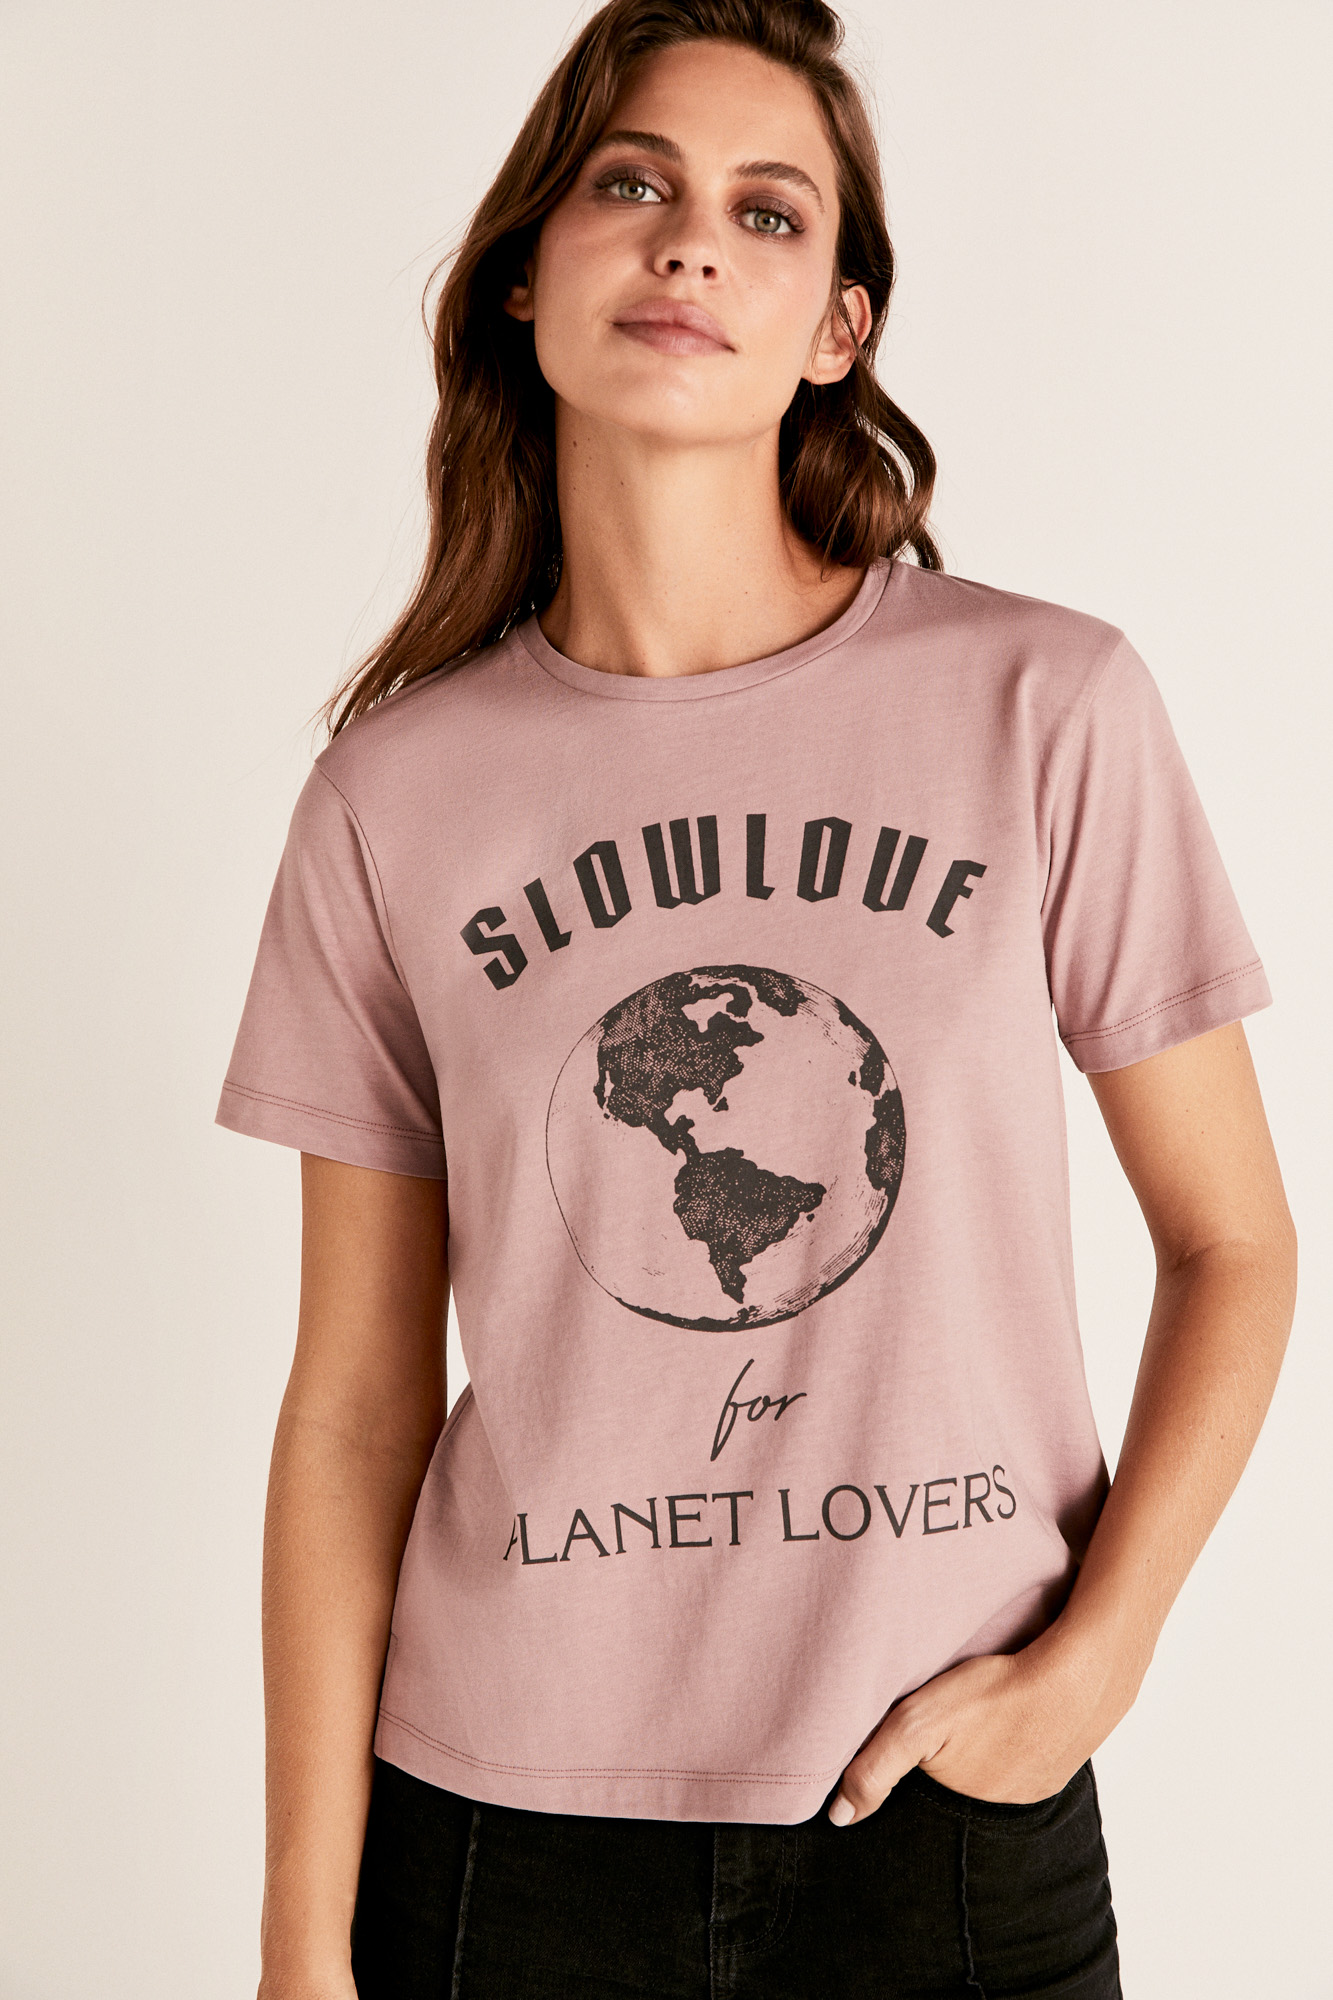 Camiseta cuello caja planeta 